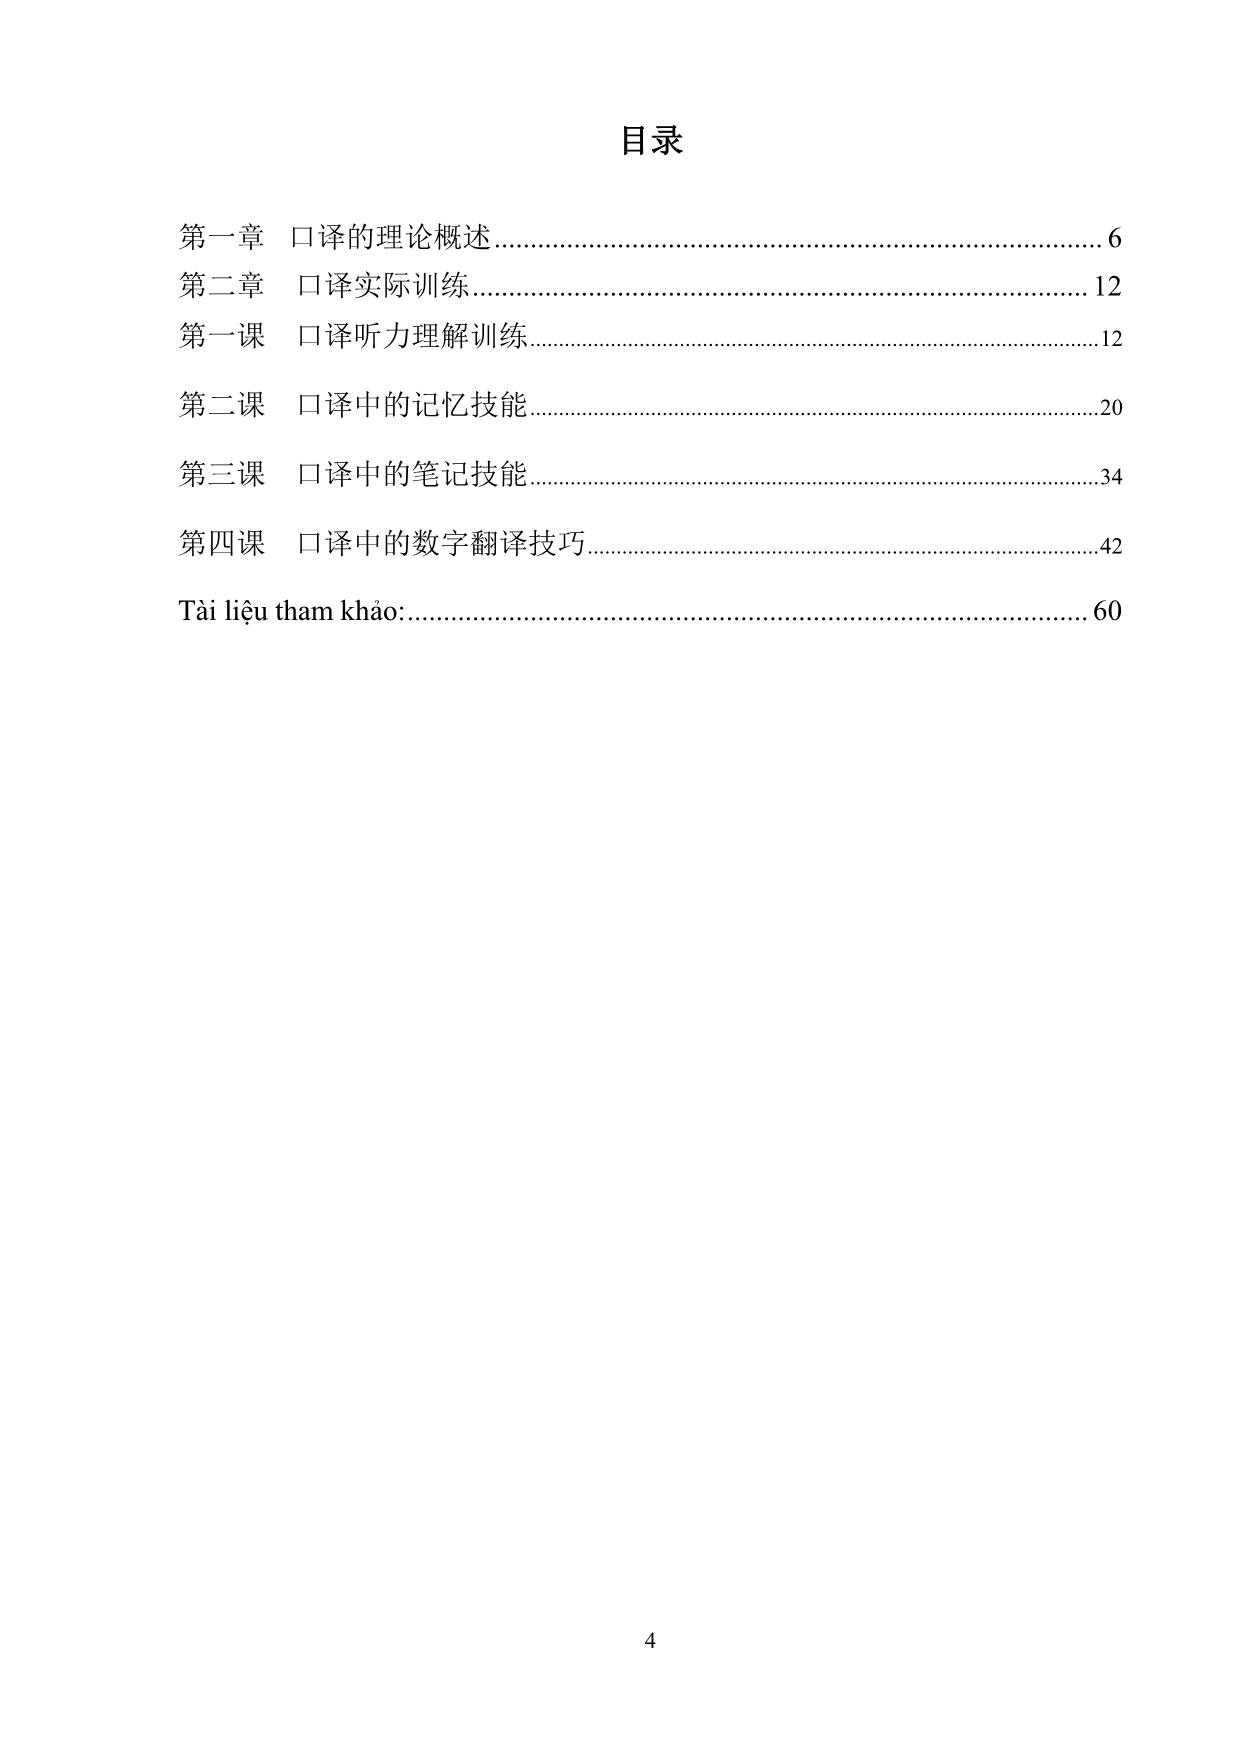 Giáo trình Phiên dịch tiếng Trung Quốc 1 trang 4